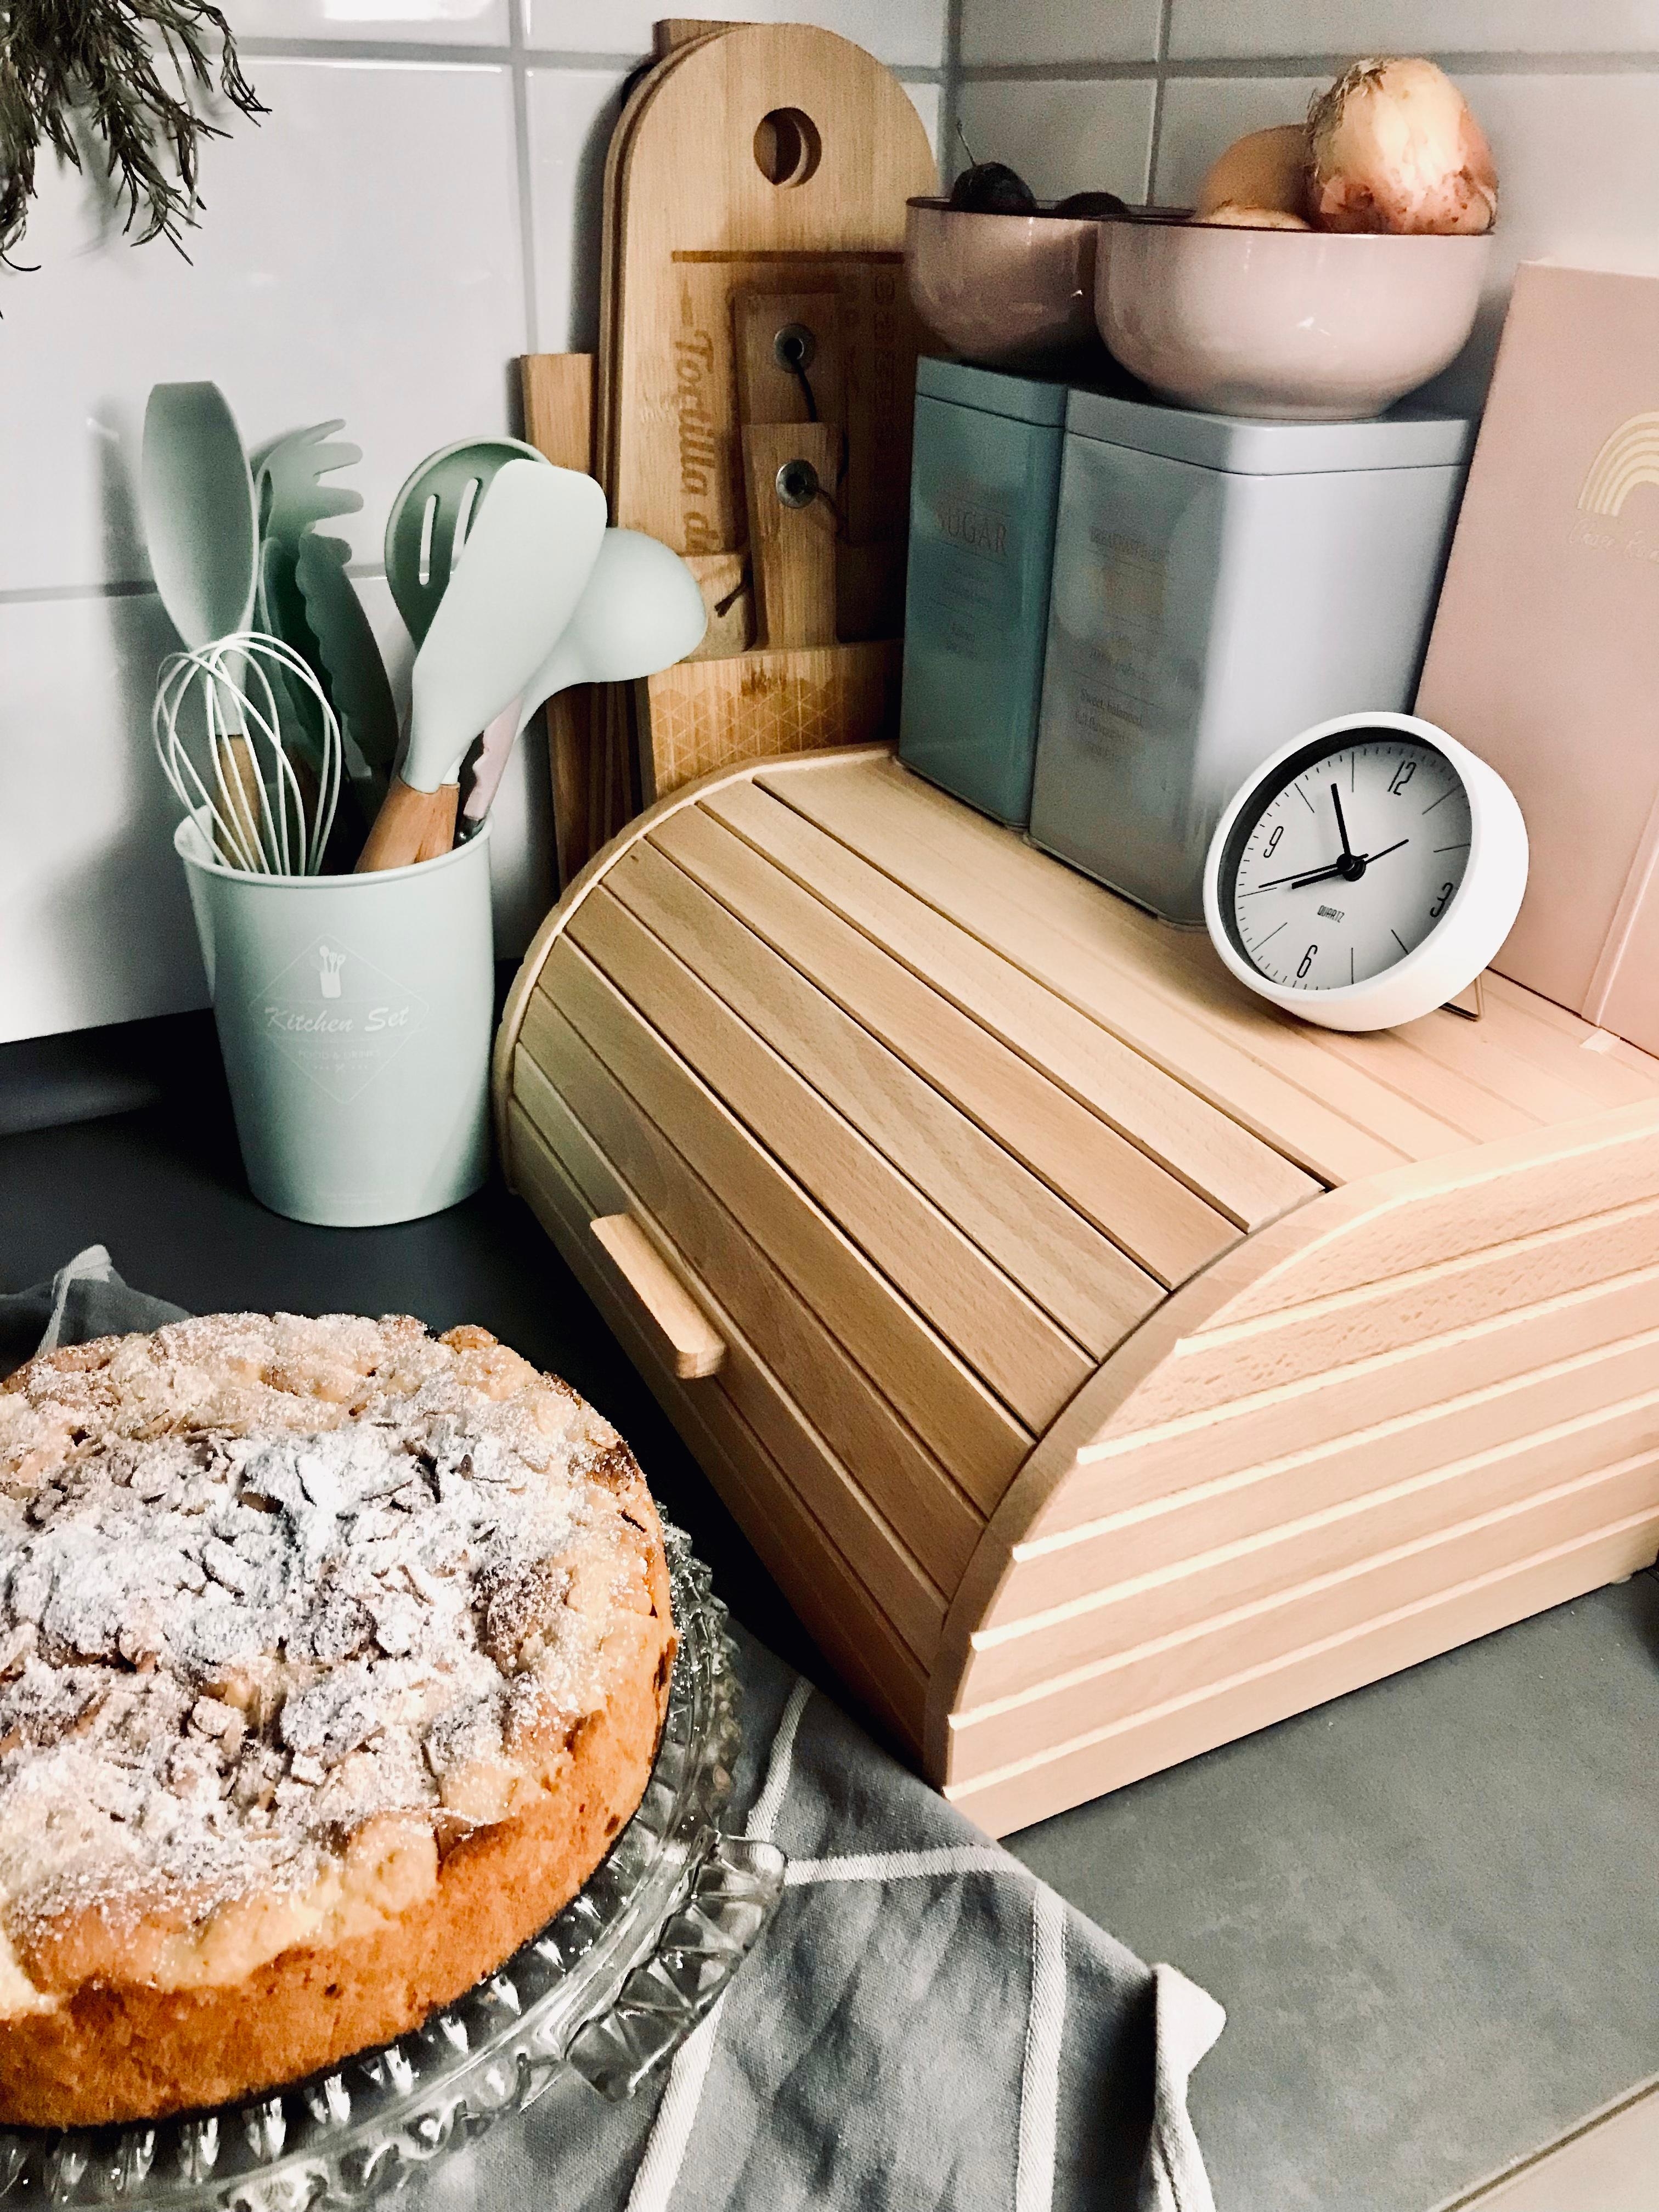 Küchenliebe in Grau Weiß Pastell 🥣
#zwetschgenkuchen #küchendeko #brotkasten #holzbrett #uhr #utensilien #küche 